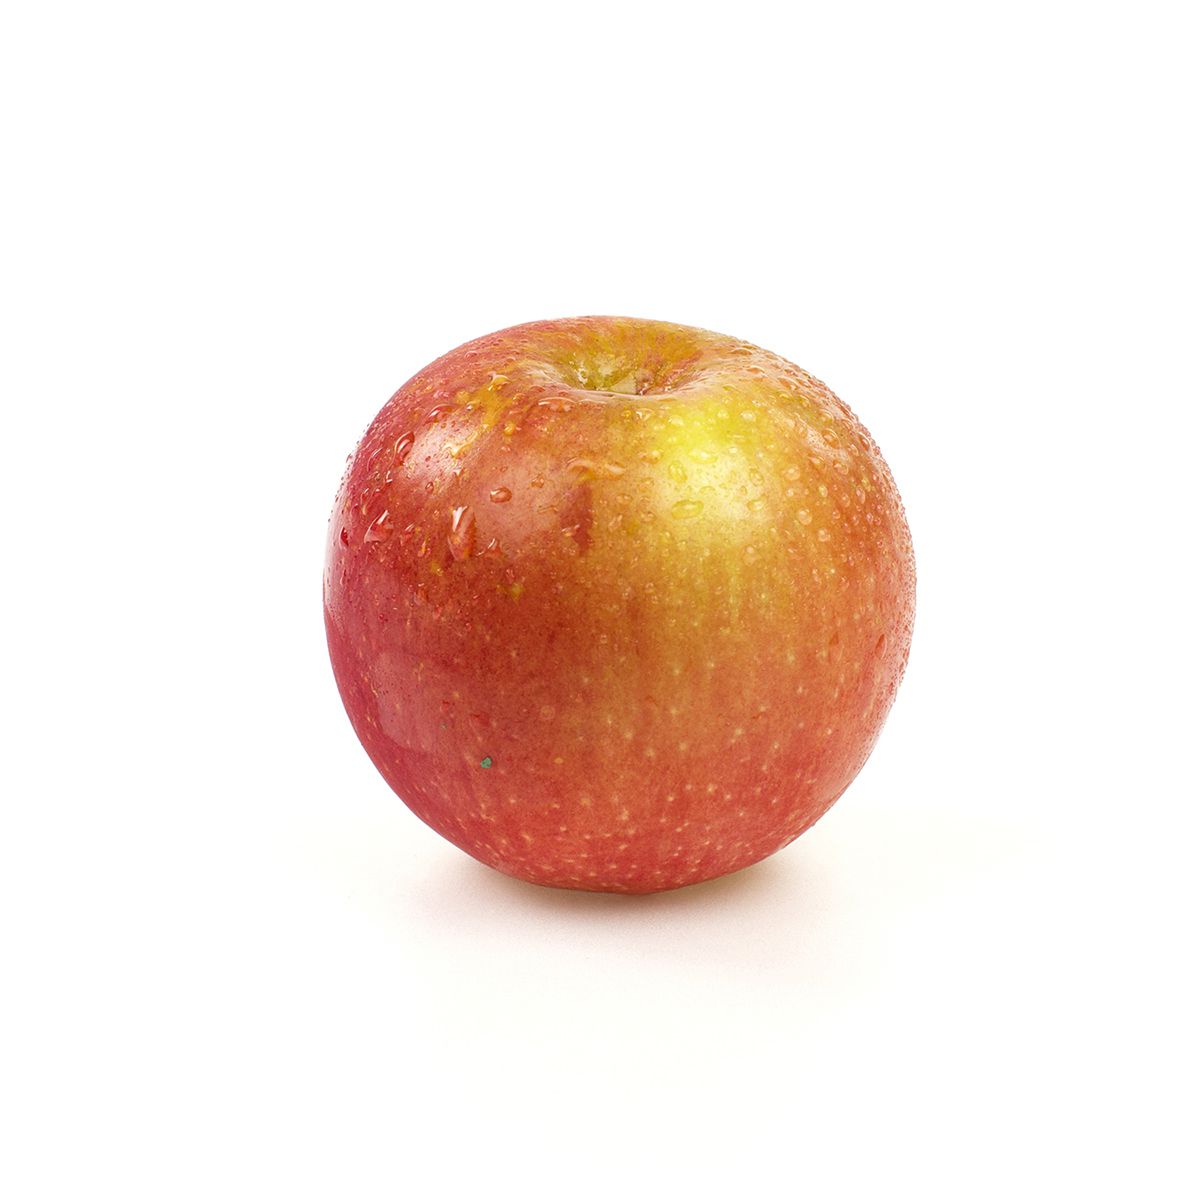 BoxNCase Premium Fuji Apples